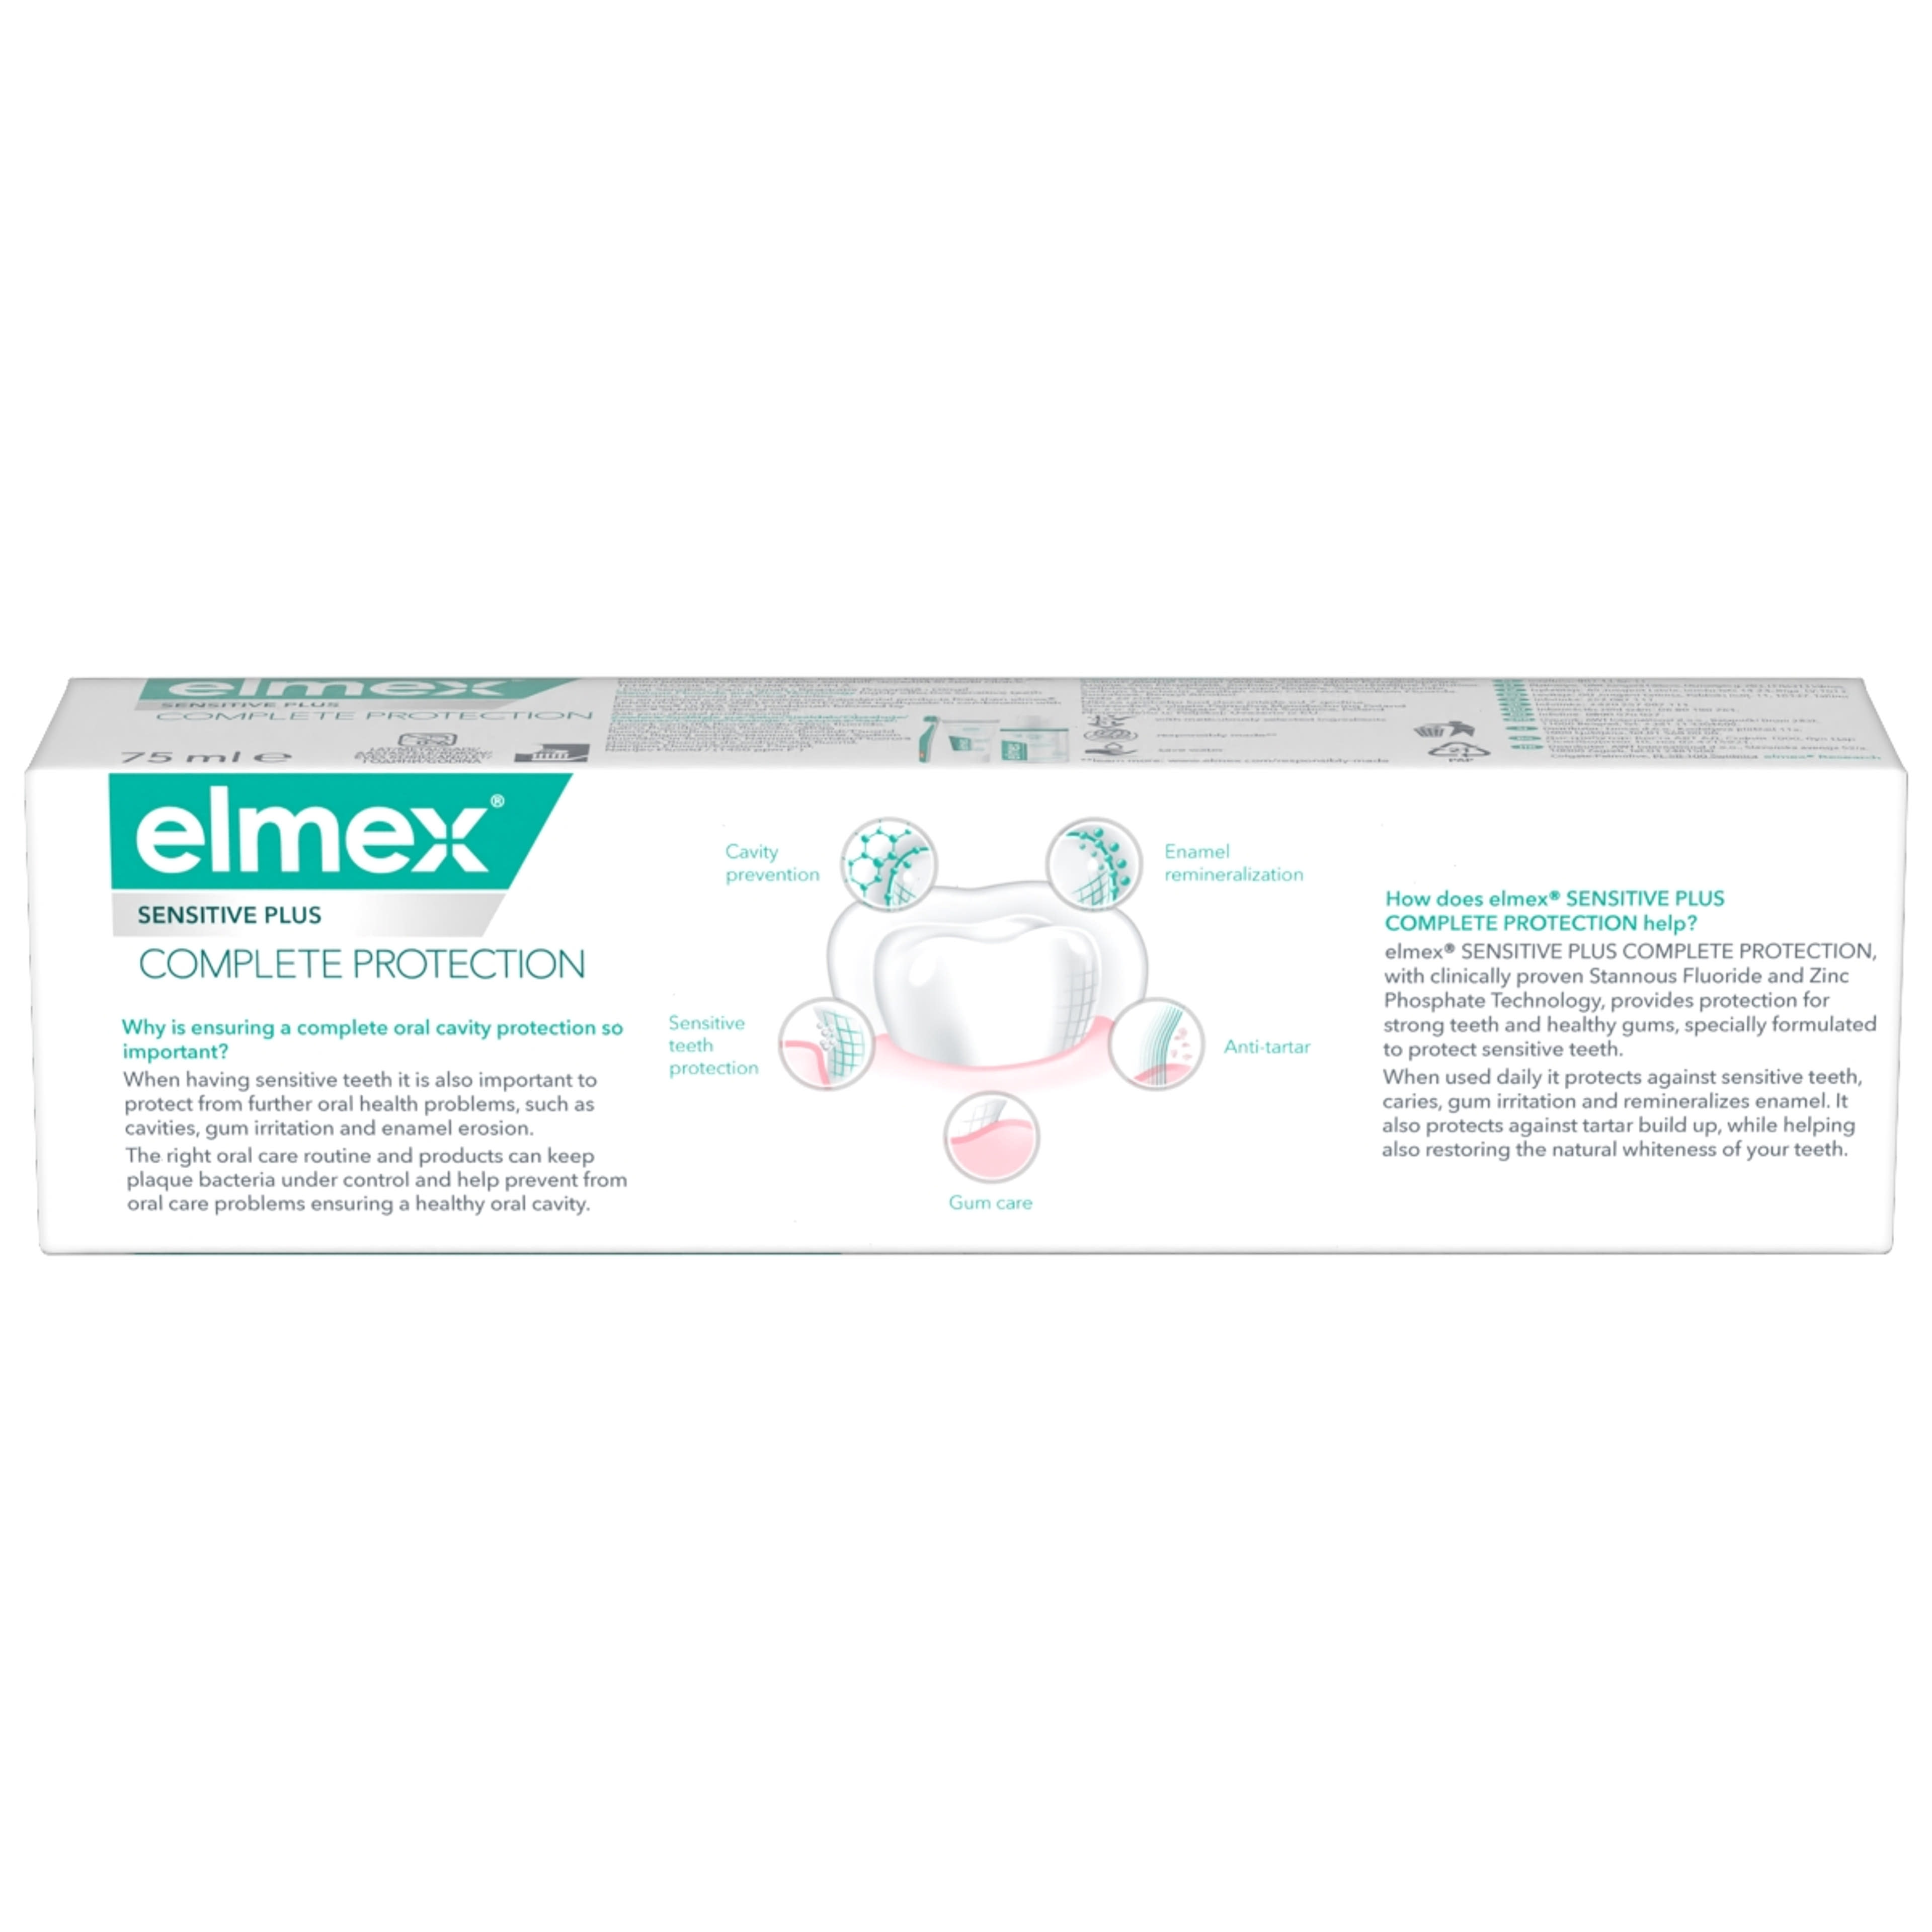 Elmex Sensitive Plus Complete Protection fogkrém - 75 ml-3